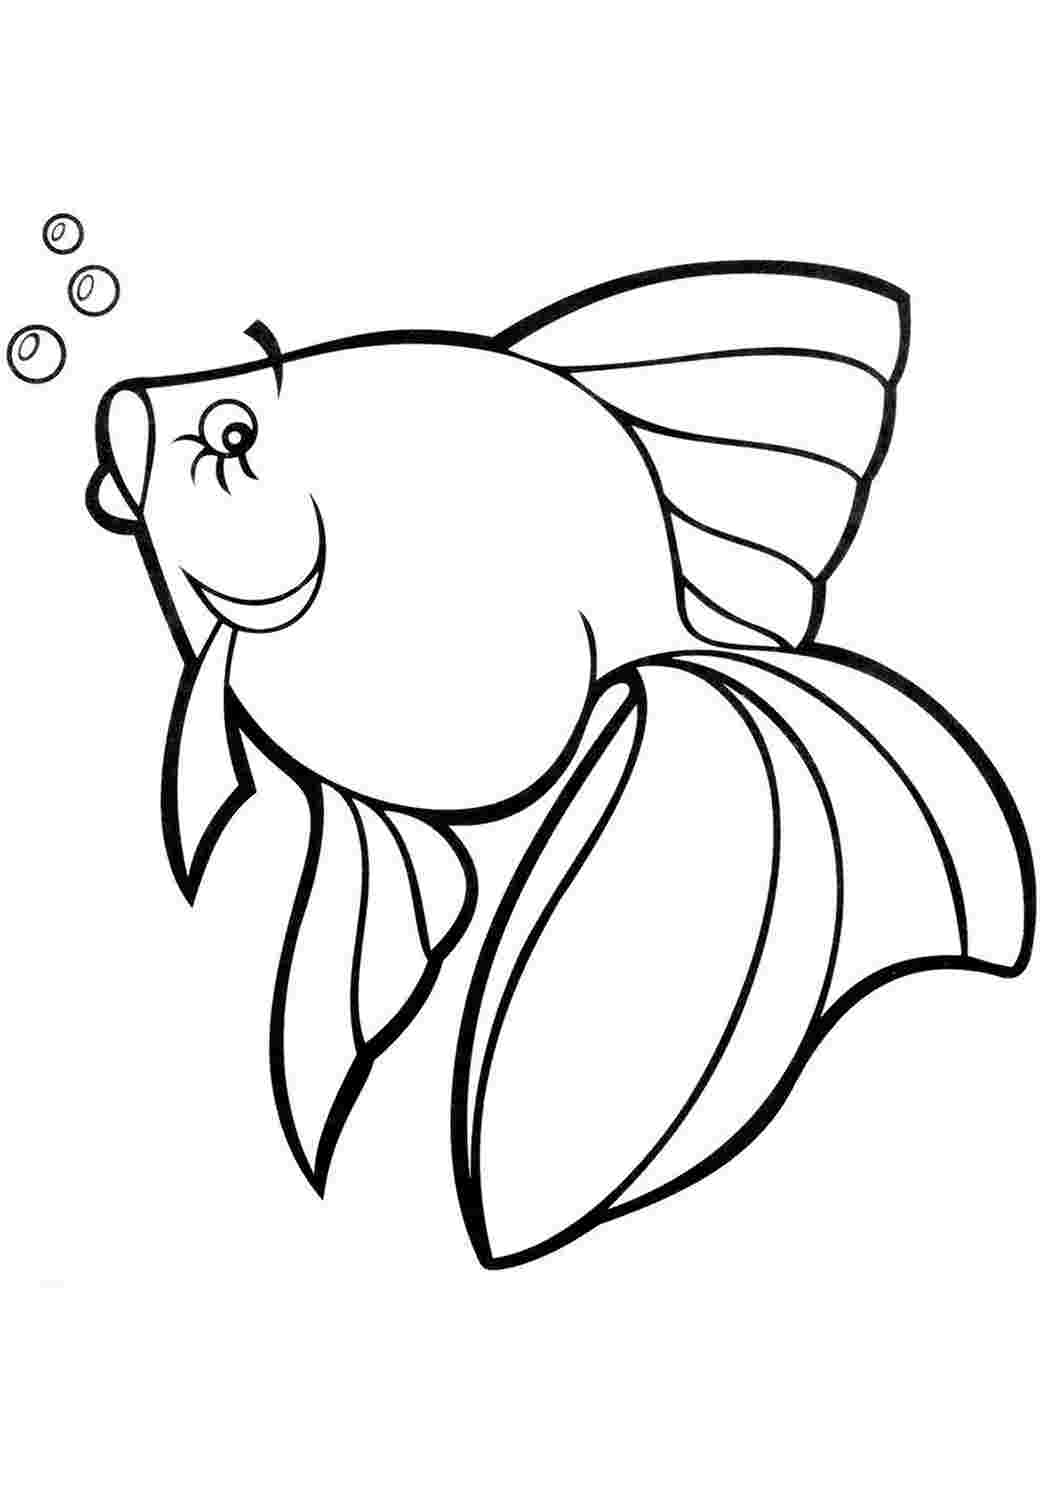 Картинки для раскрашивания для детей. Раскраска рыбка. Рыбка раскраска для детей. Рыба раскраска для детей. Красивые рыбки раскраски для детей.